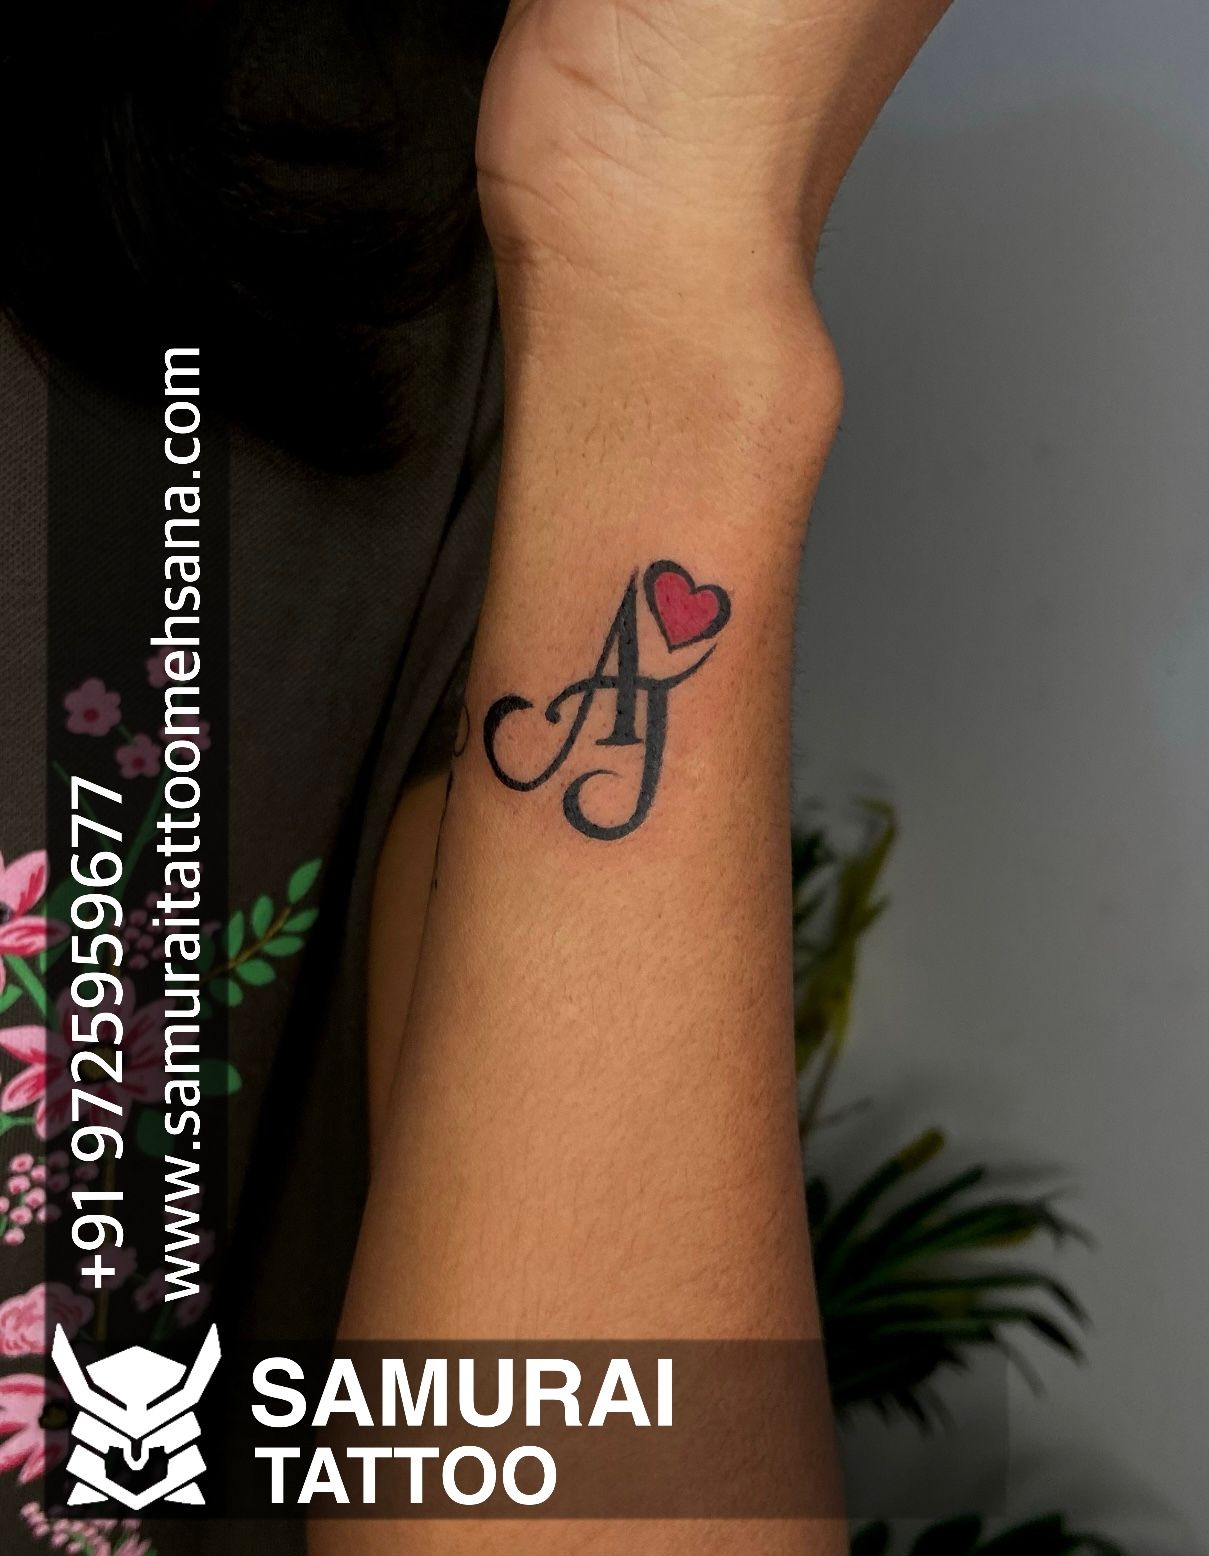 Tattoo uploaded by Vipul Chaudhary  Aj tattoo  aj logo tattoo  Aj font  tattoo  Aj tattoo ideas  Tattoodo